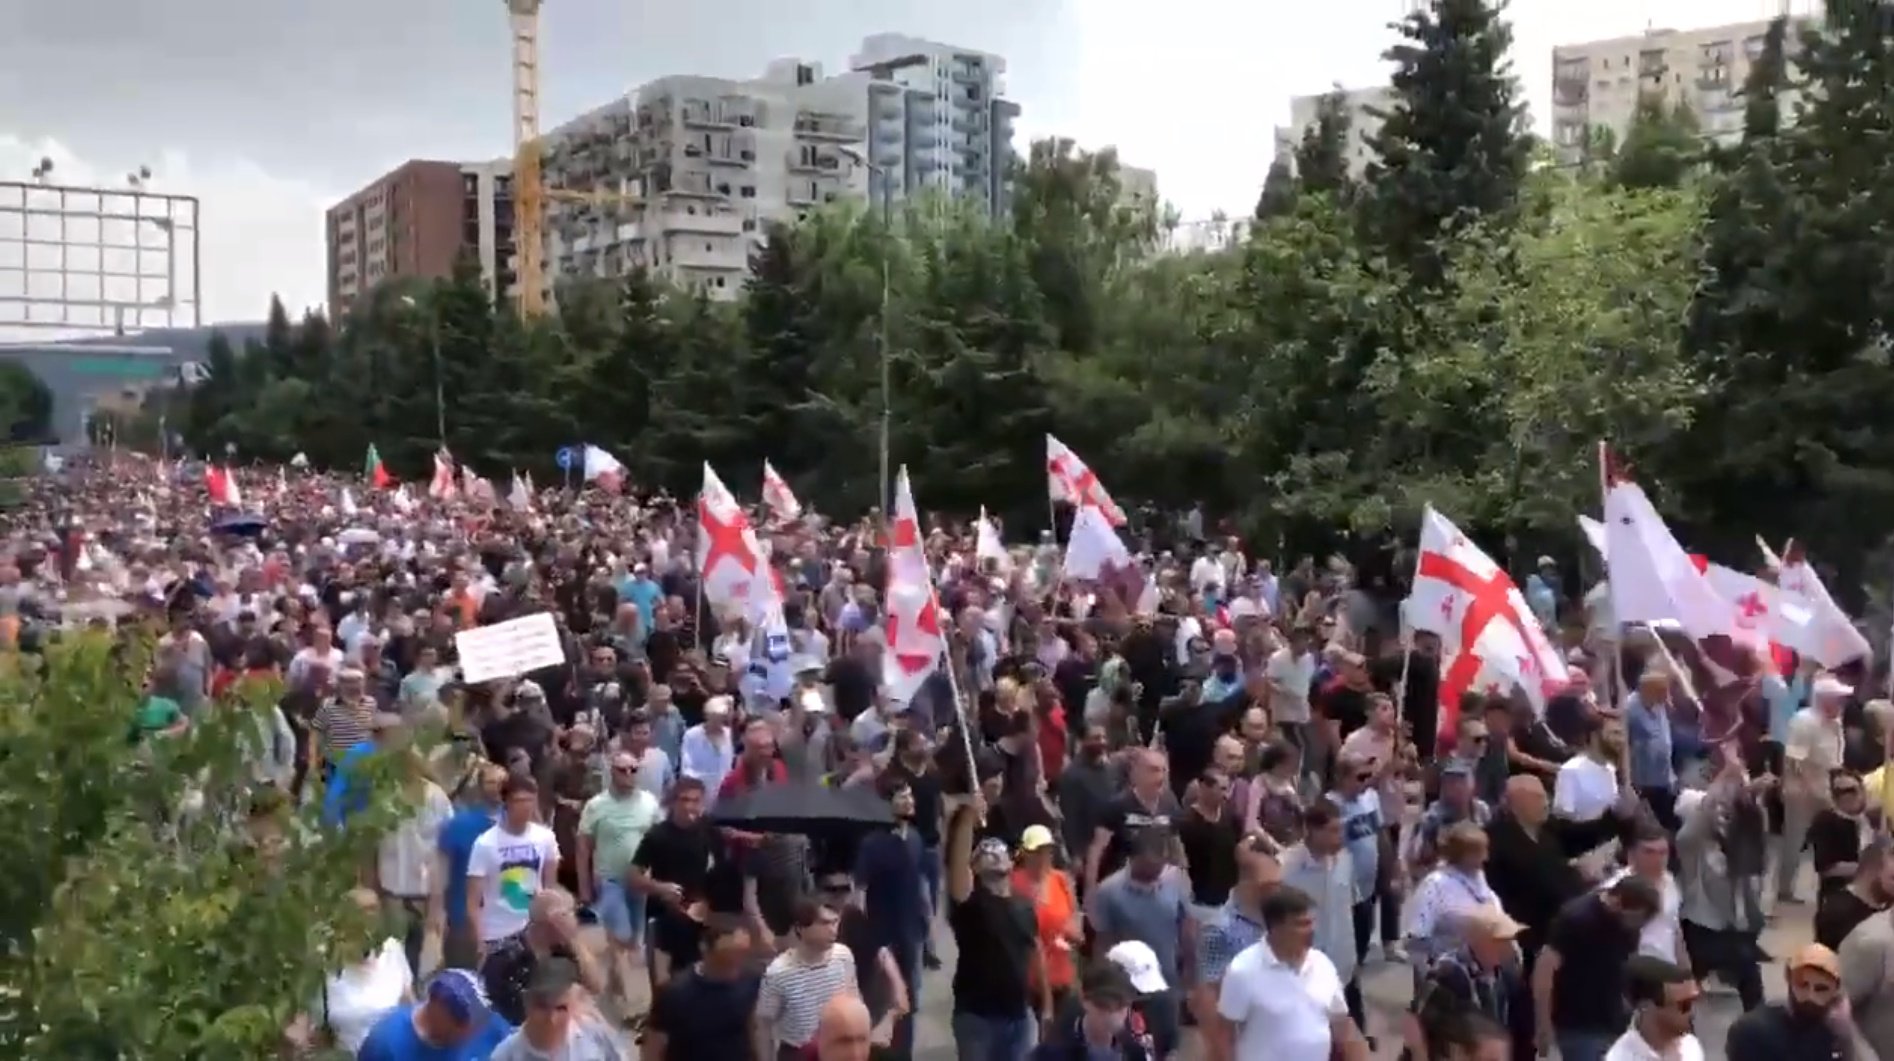 Dos milers d'homòfobs assalten el Pride de Tbilisi, a Geòrgia, i calen foc a material LGBTI | VÍDEO